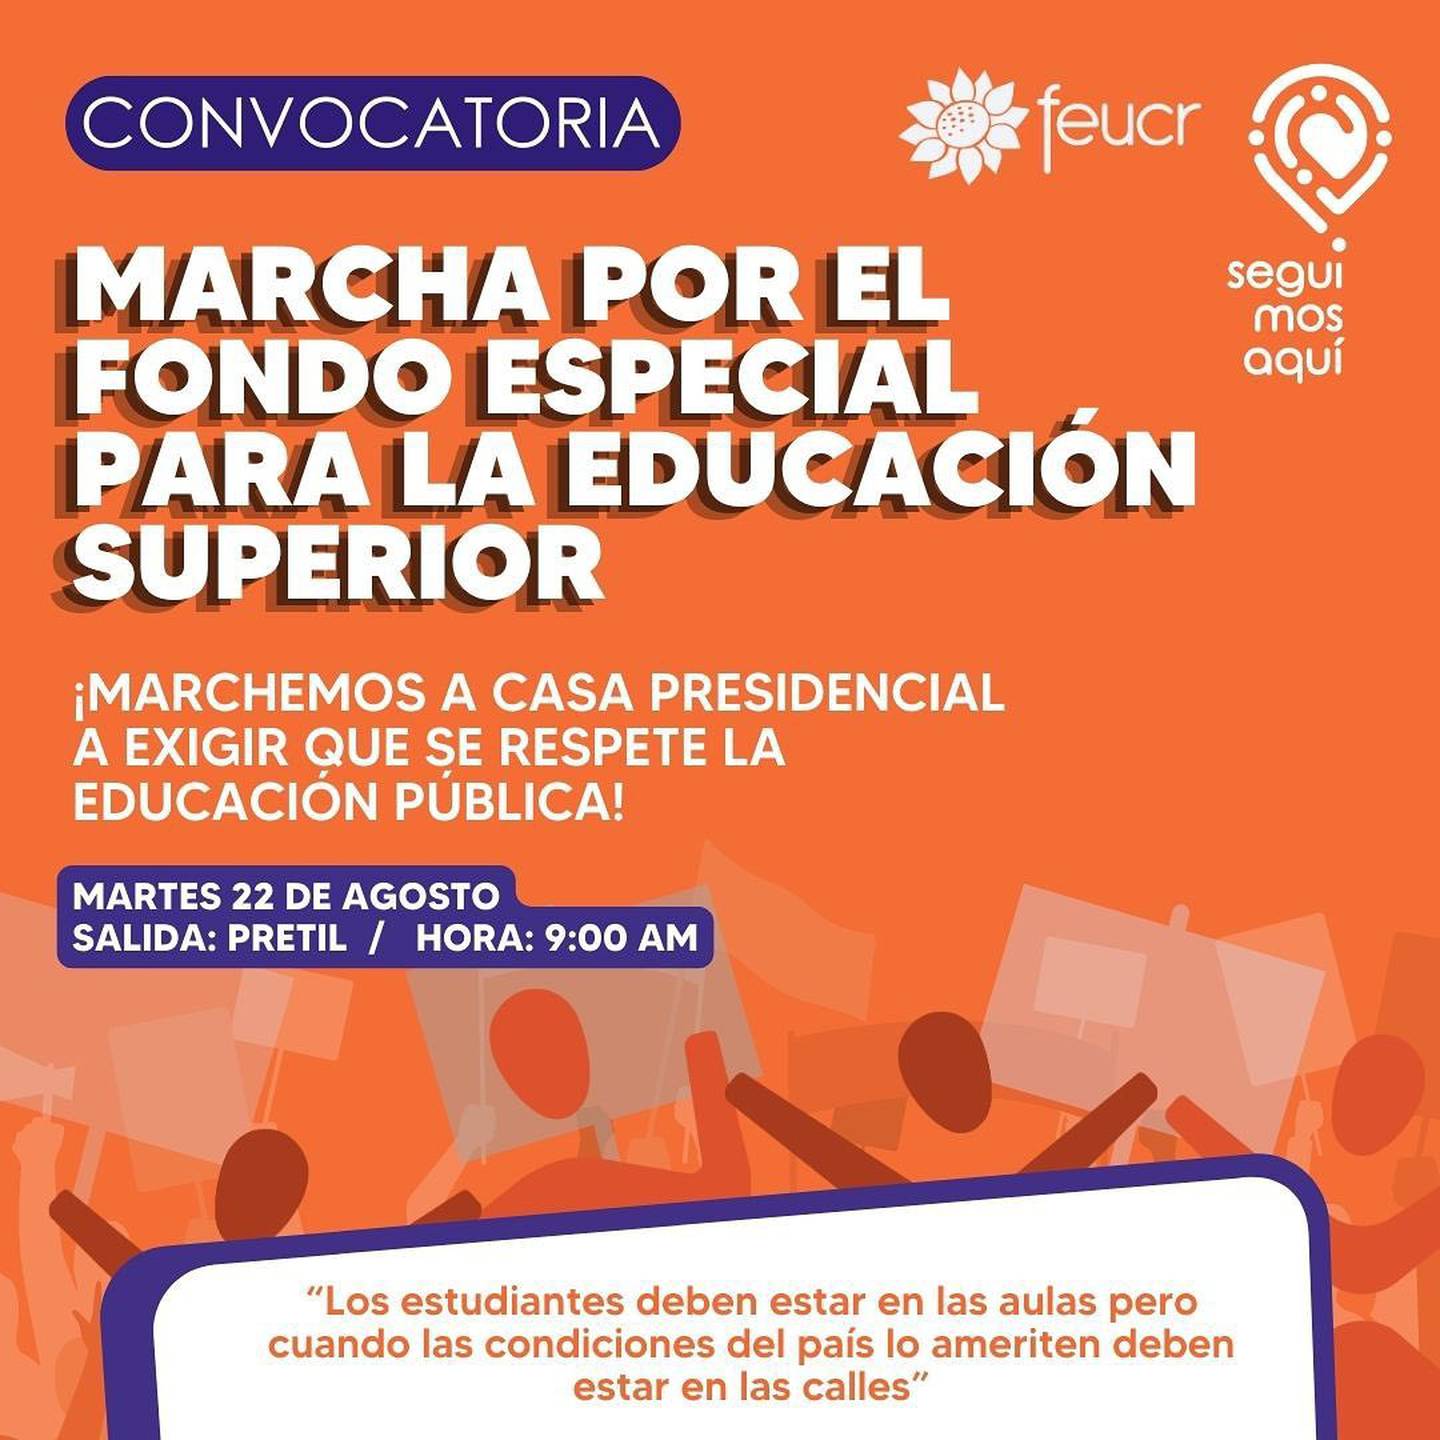 La Federación de Estudiantes de la Universidad de Costa Rica (Feucr) convocó a marcha por la defensa del Fondo Especial para la Educación Superior (FEES).